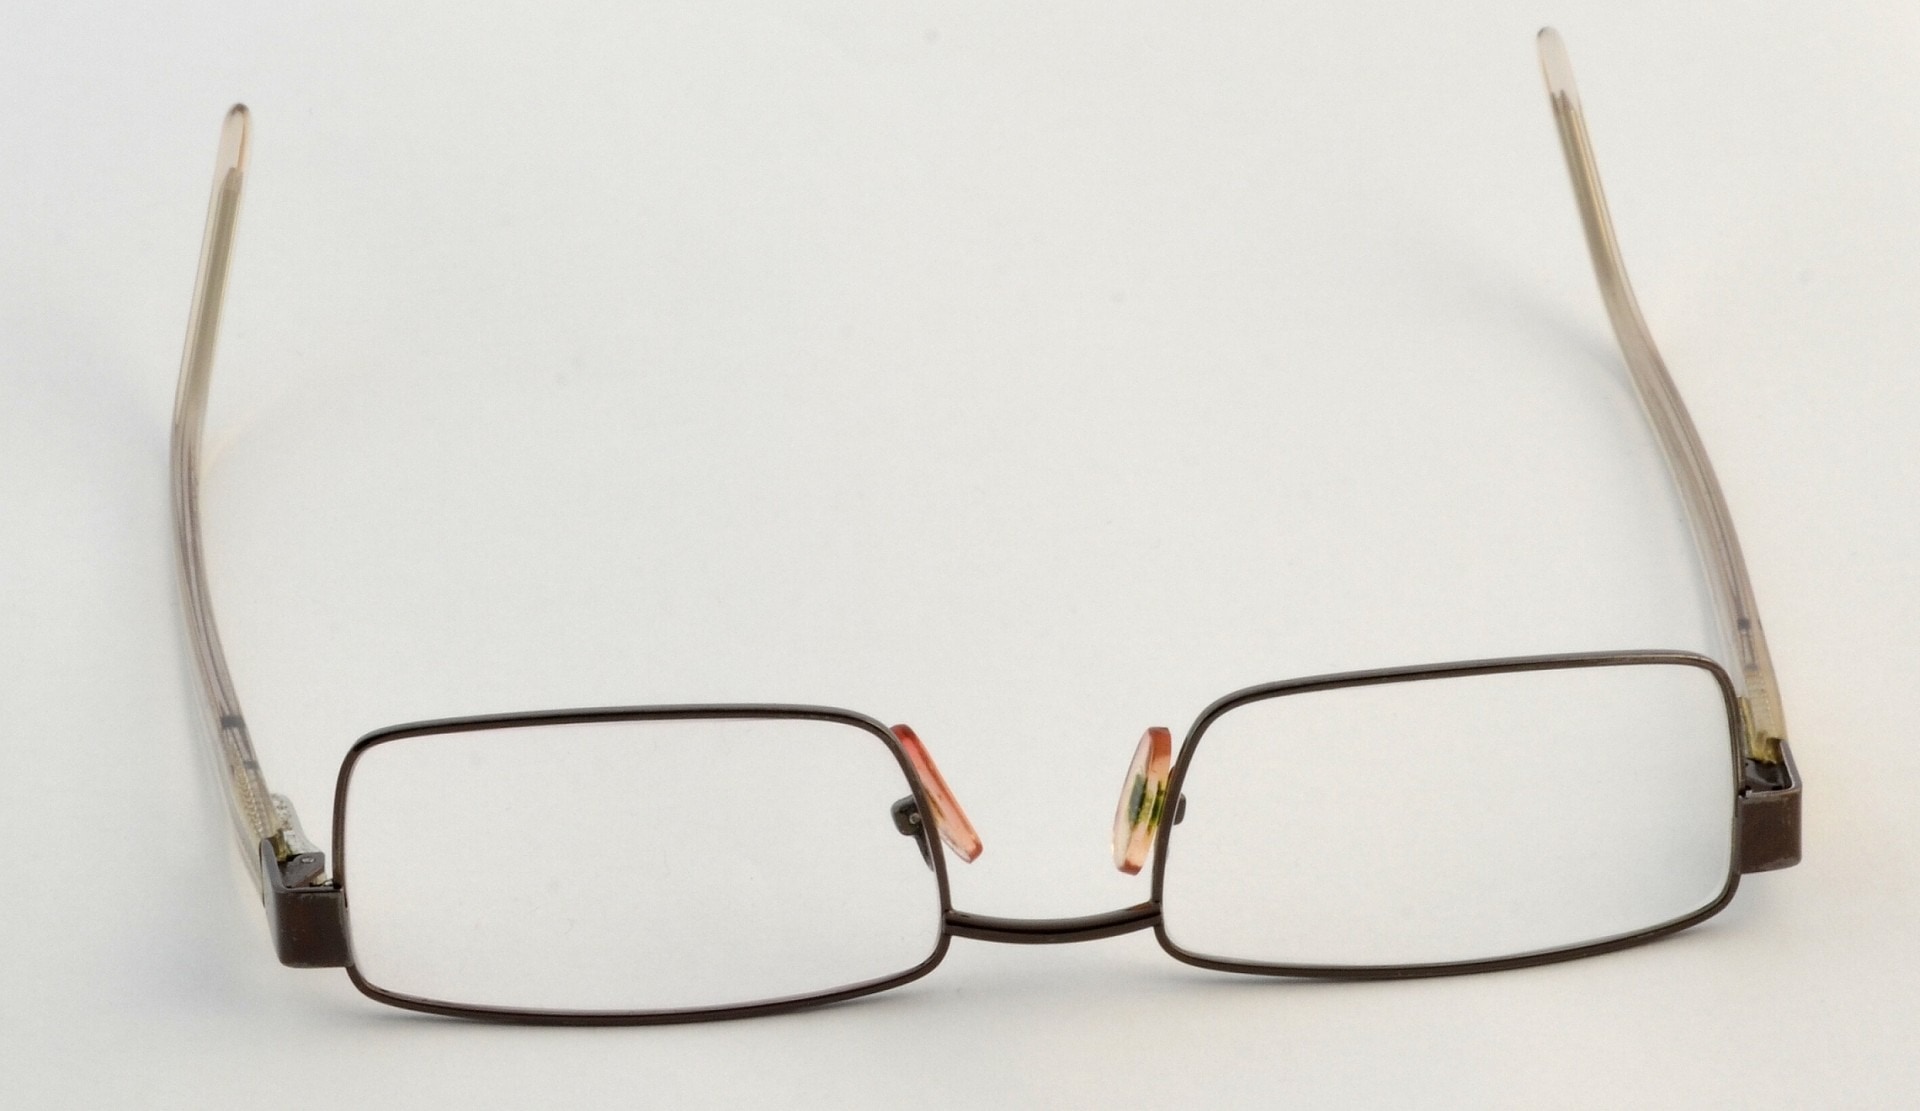 black frame eyeglasses